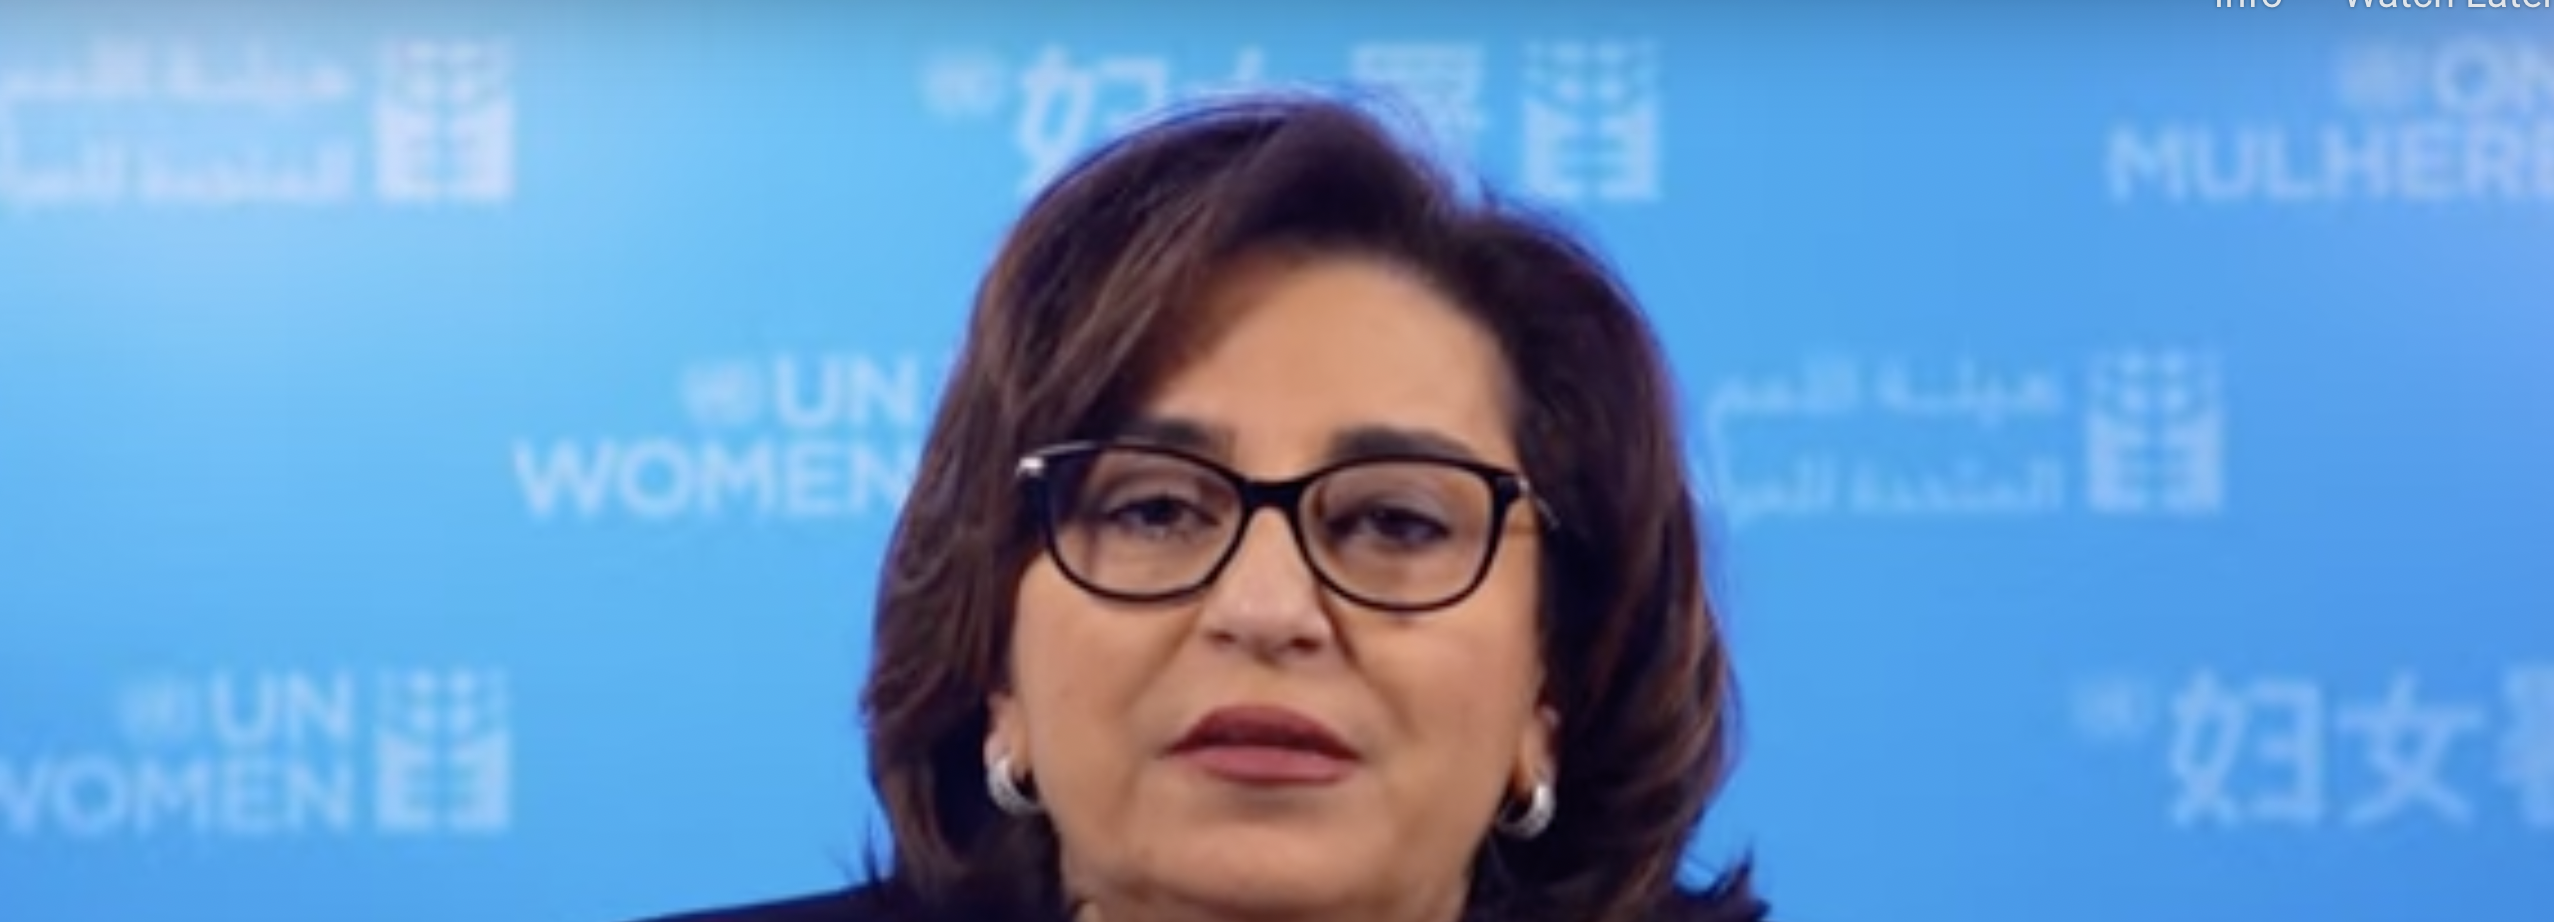  Sima Bahous, UN Women Executive Director